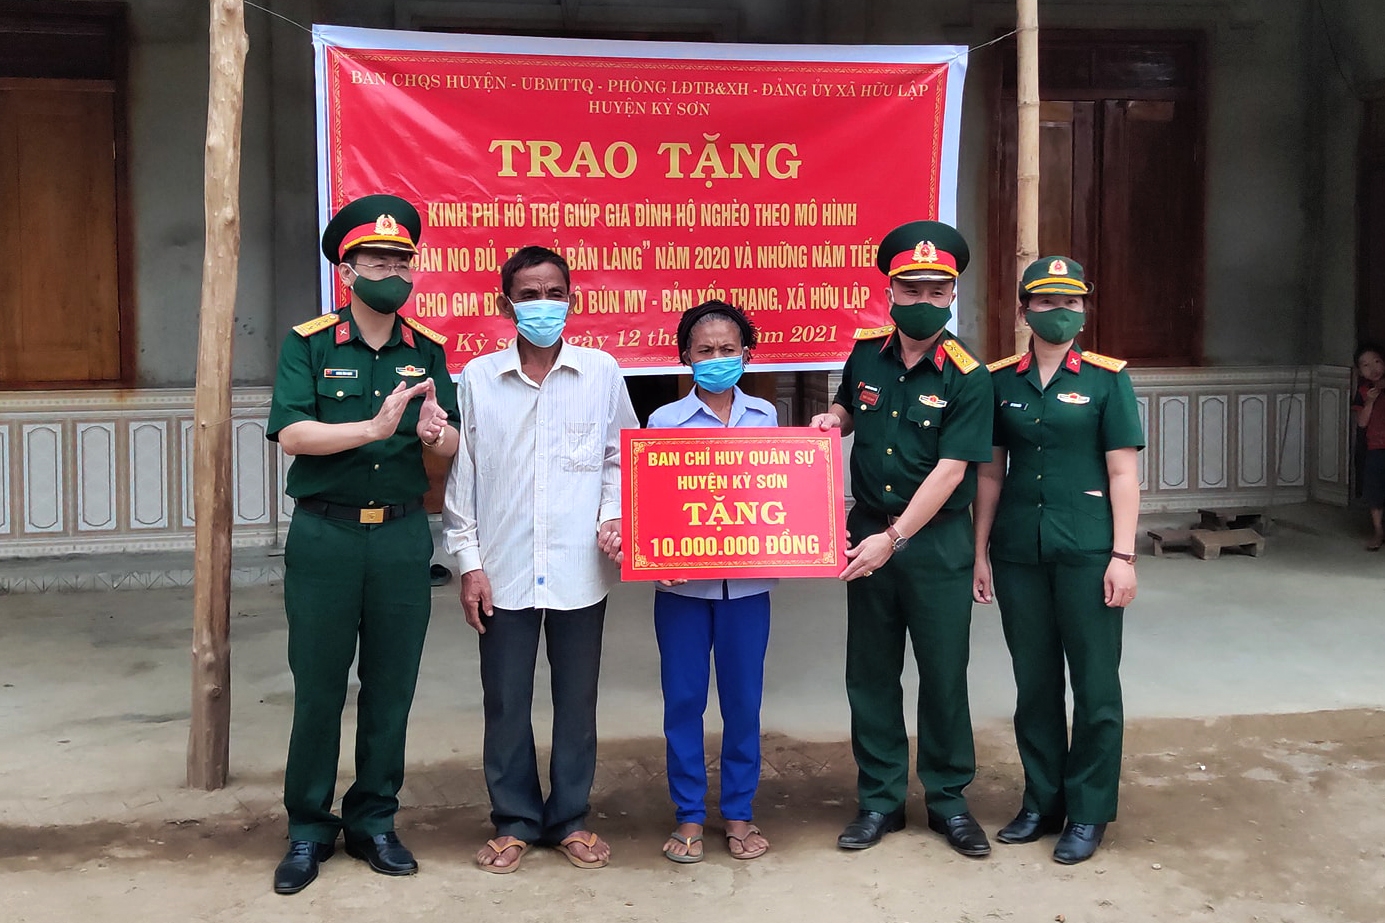 Ban CHQS huyện Kỳ Sơn trao tiền hỗ trợ xây dựng nhà cho gia đình ông Lô Bún My, ở bản Xốp Thạng, xã Hữu Lập.